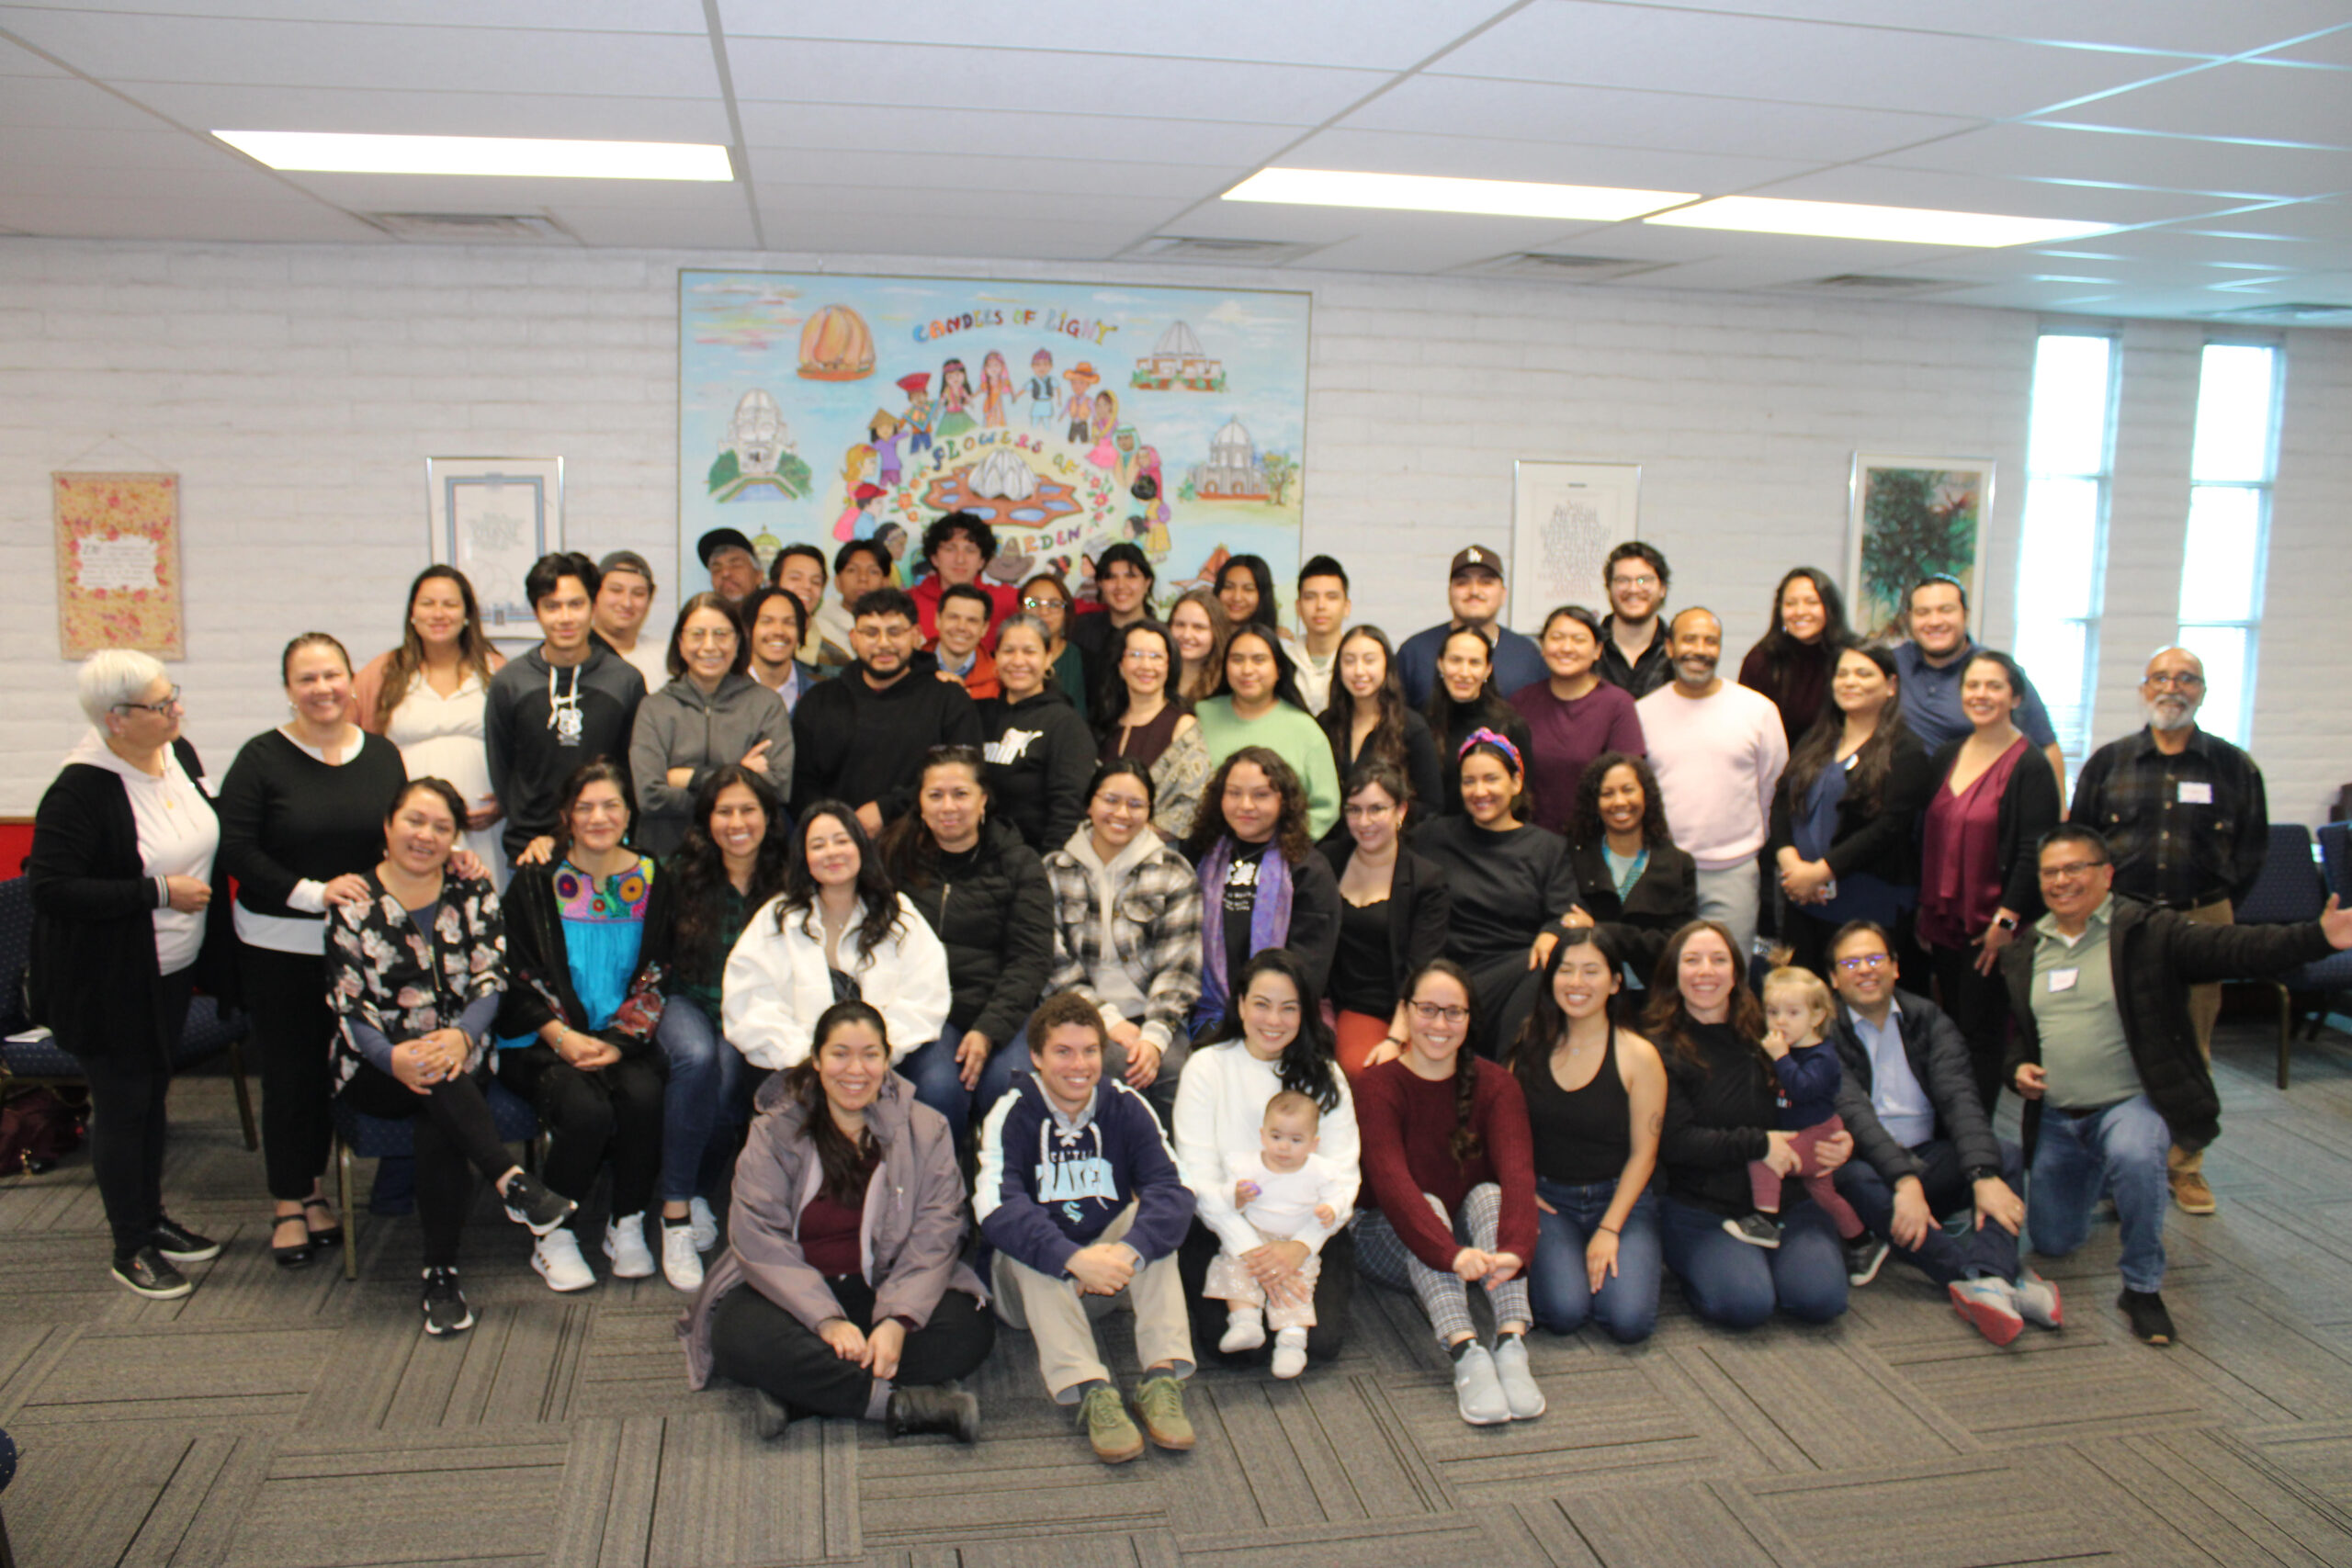 Spanish-speaking tutors build vision, purpose In New Mexico